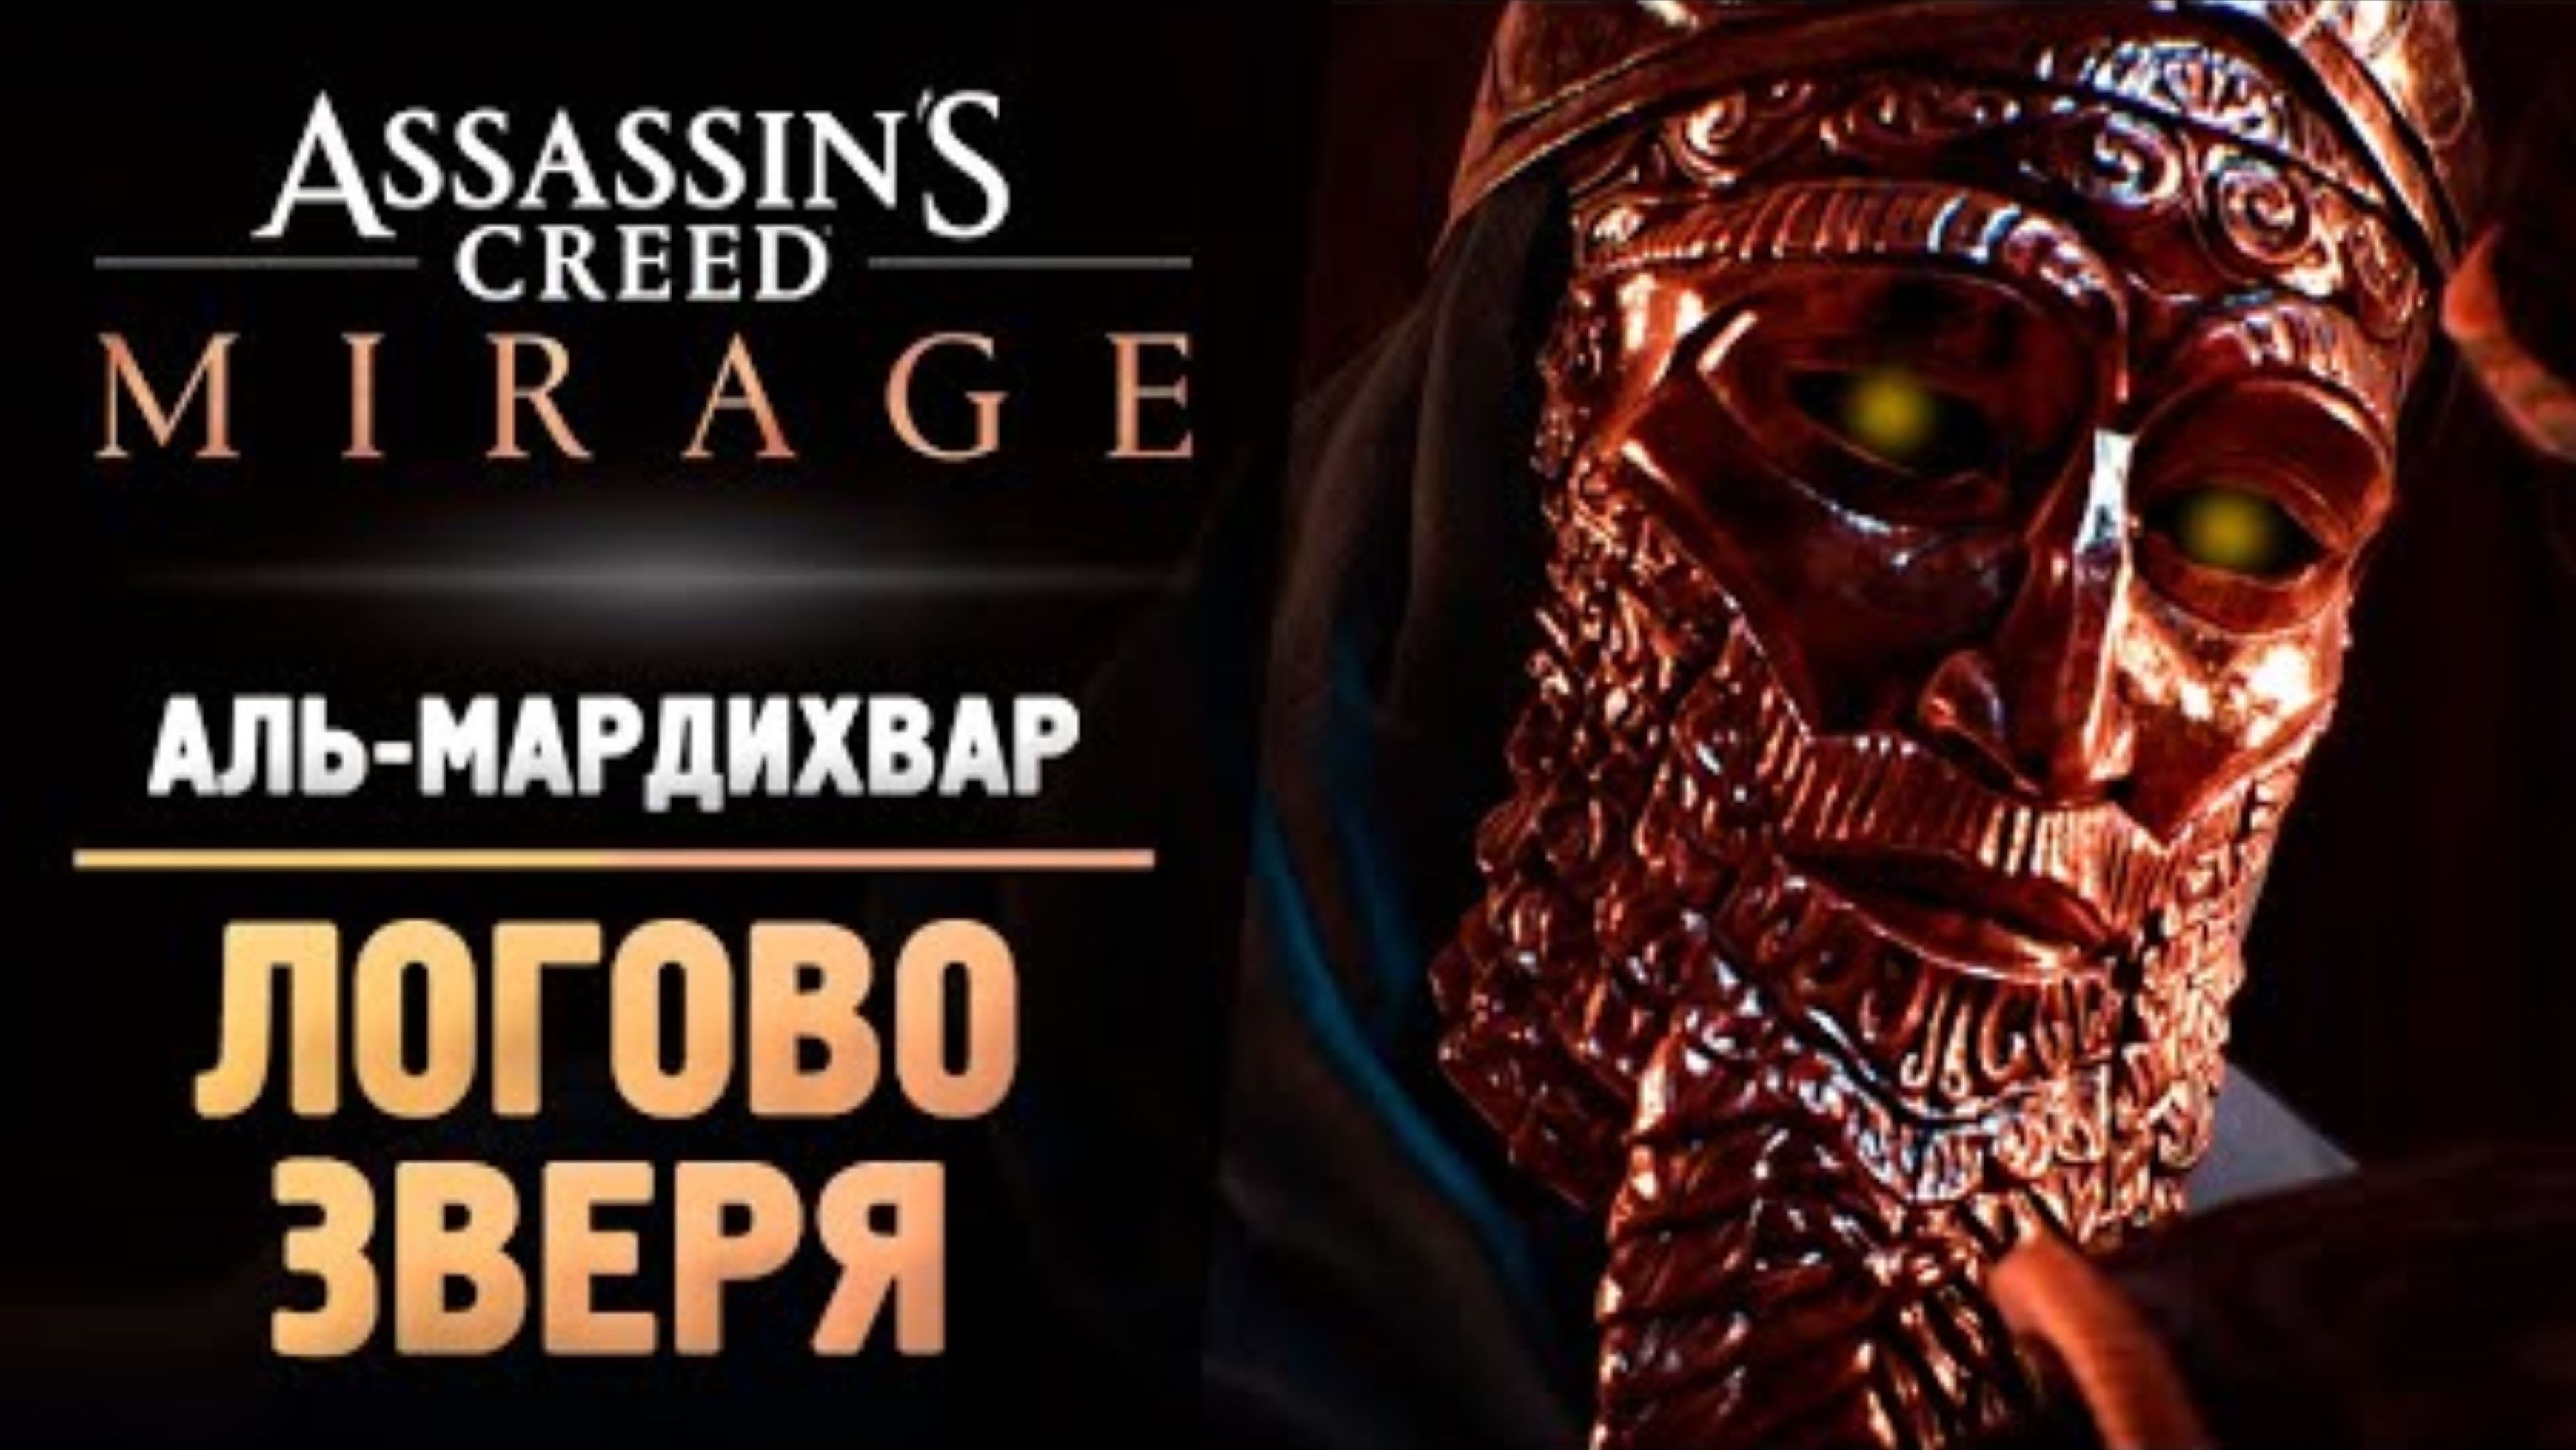 ЛОГОВО ЗВЕРЯ - Прохождение - Assassin’s Creed Mirage #8